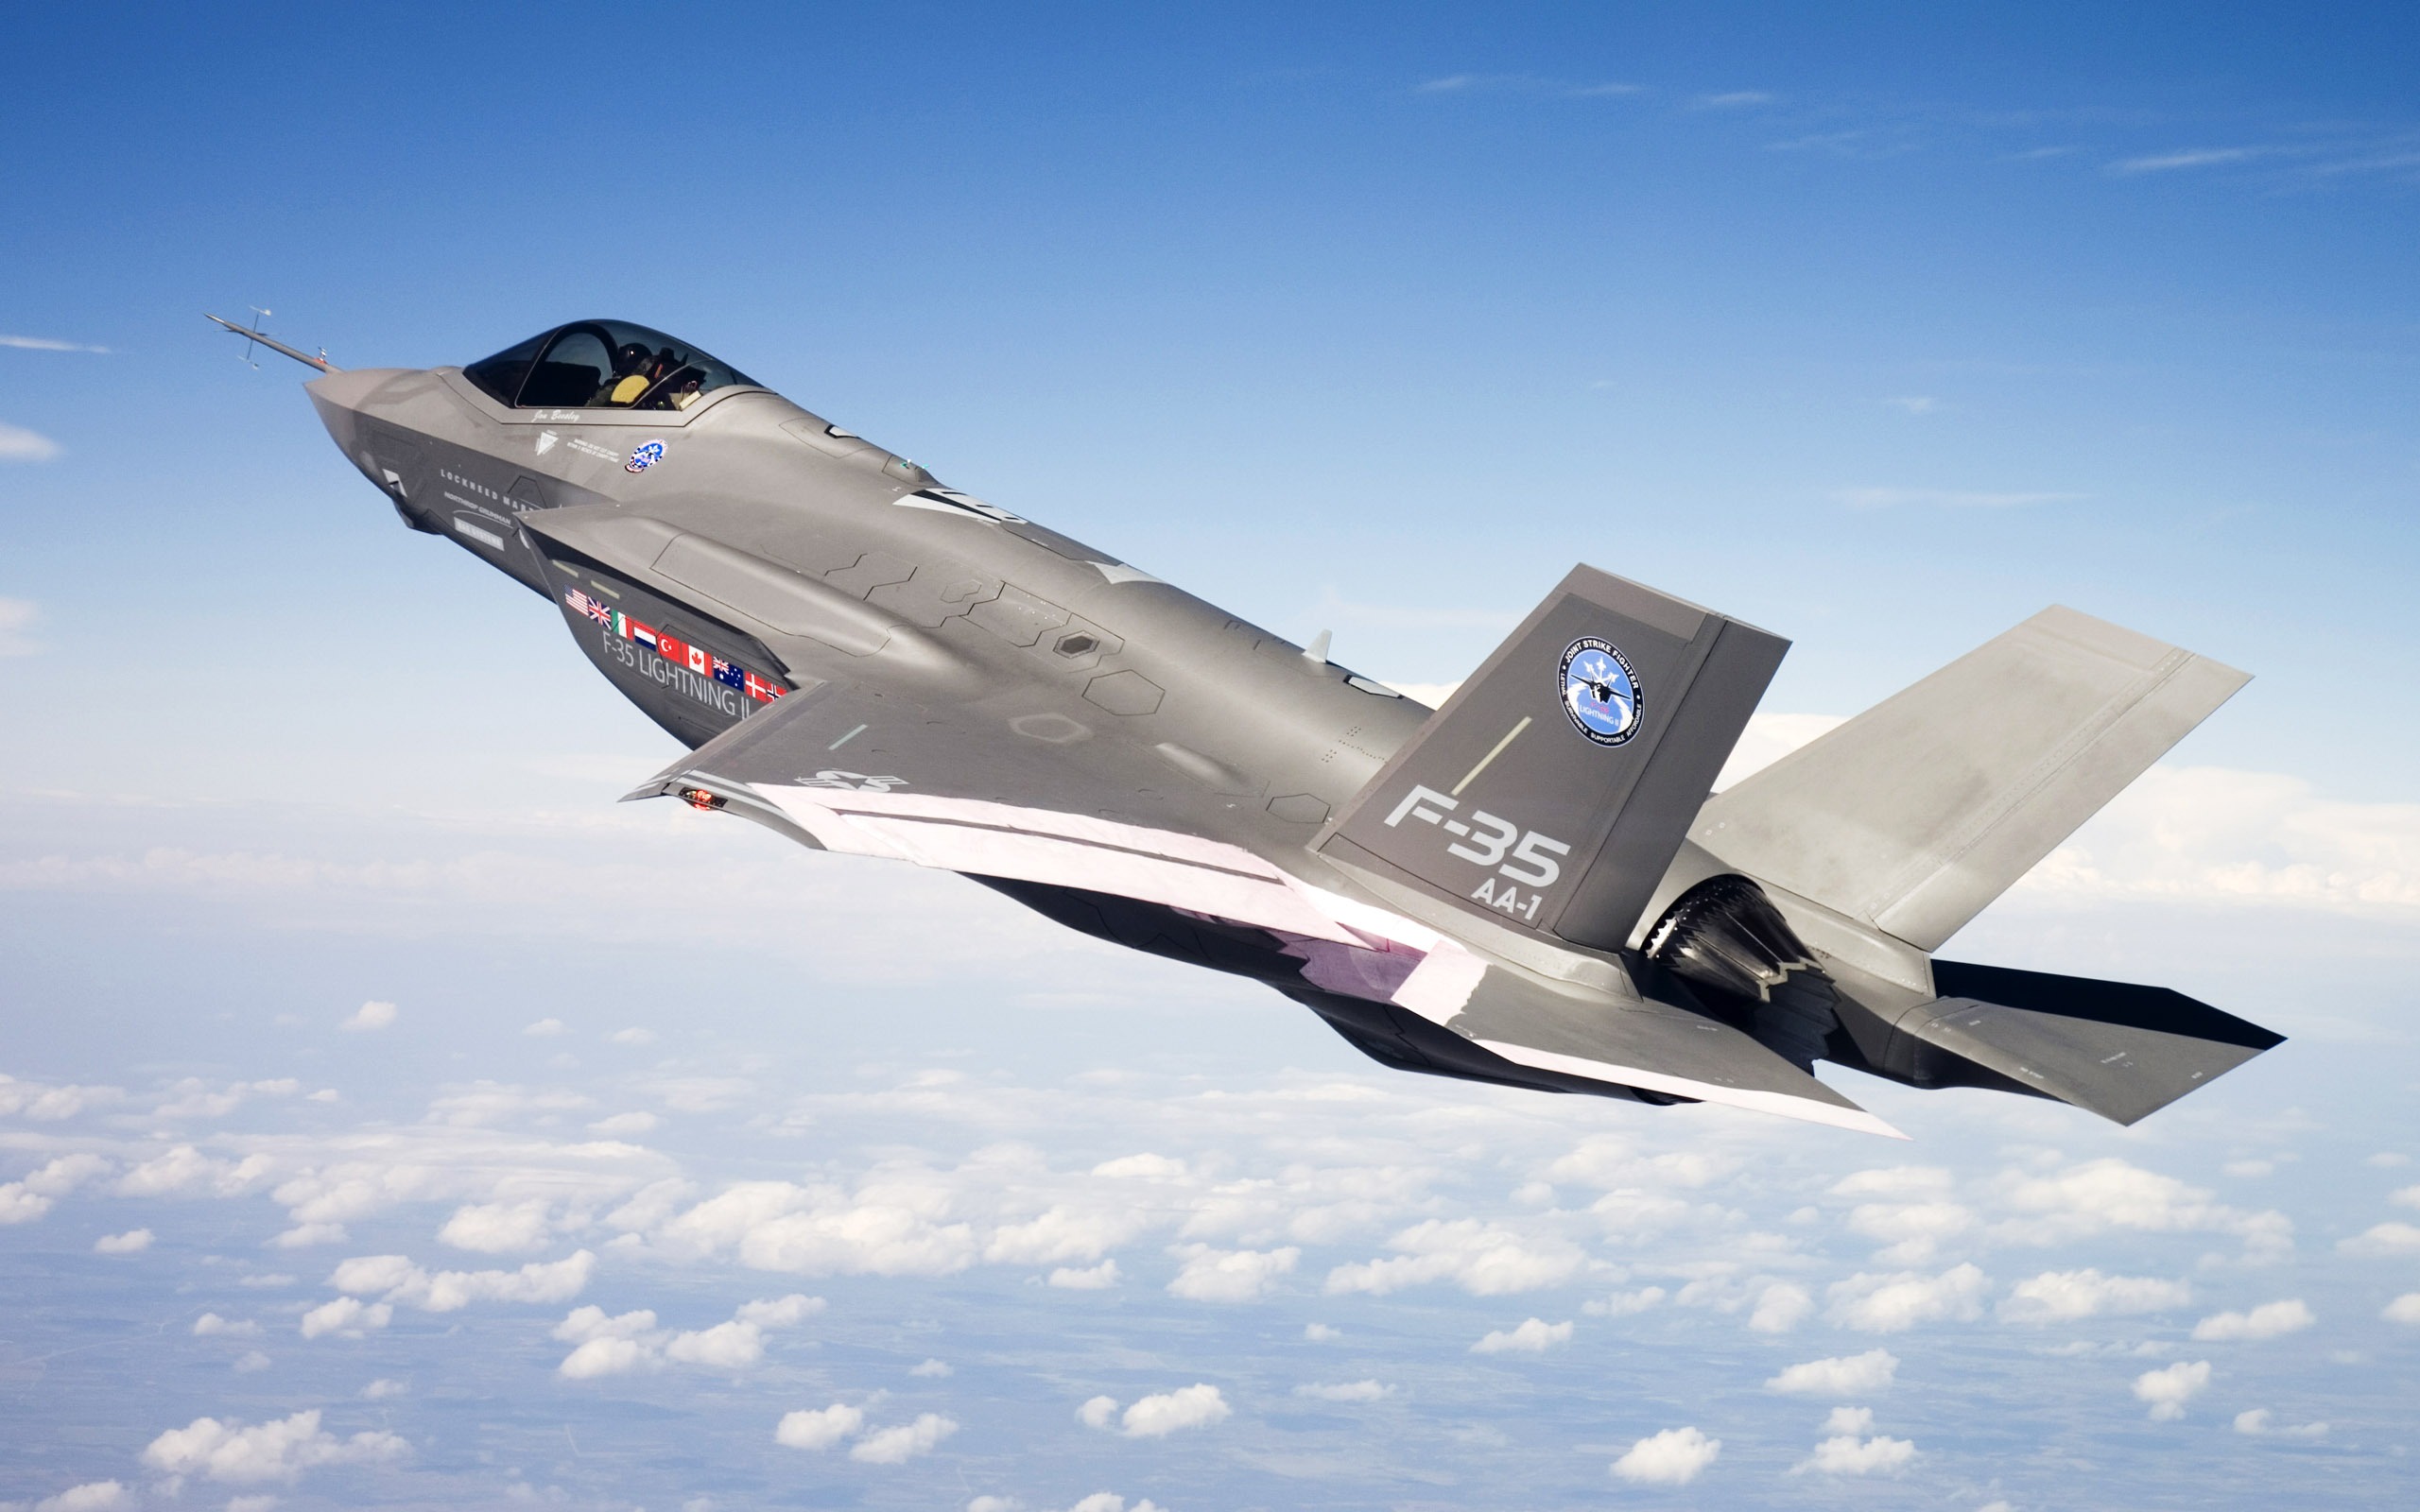 ABD’nin ‘sızıntı’ korkusu İsrail’i etkiledi. Pilotlara F-35 yasağı